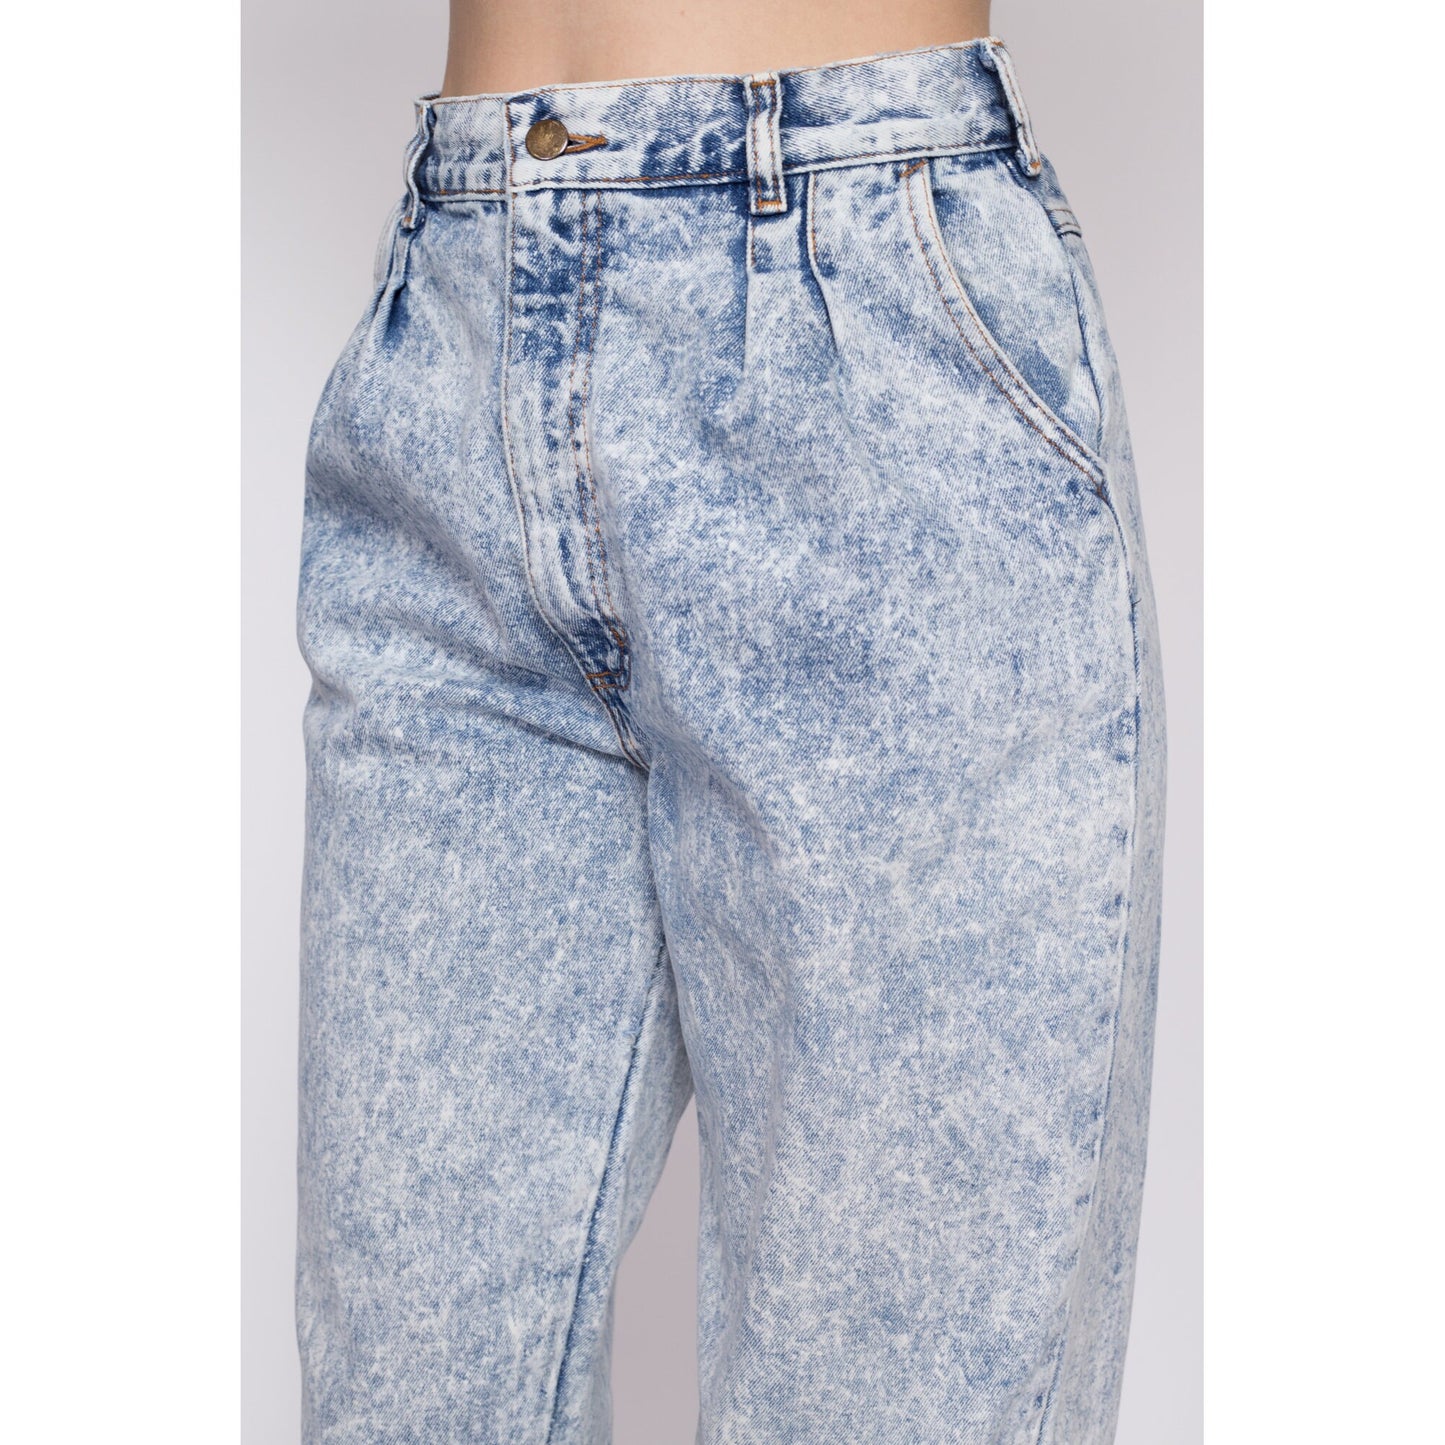 Medium 80s Acid Wash High Waisted Jeans 28.5" | Vintage Pleated Denim Tapered Leg Mom Jeans